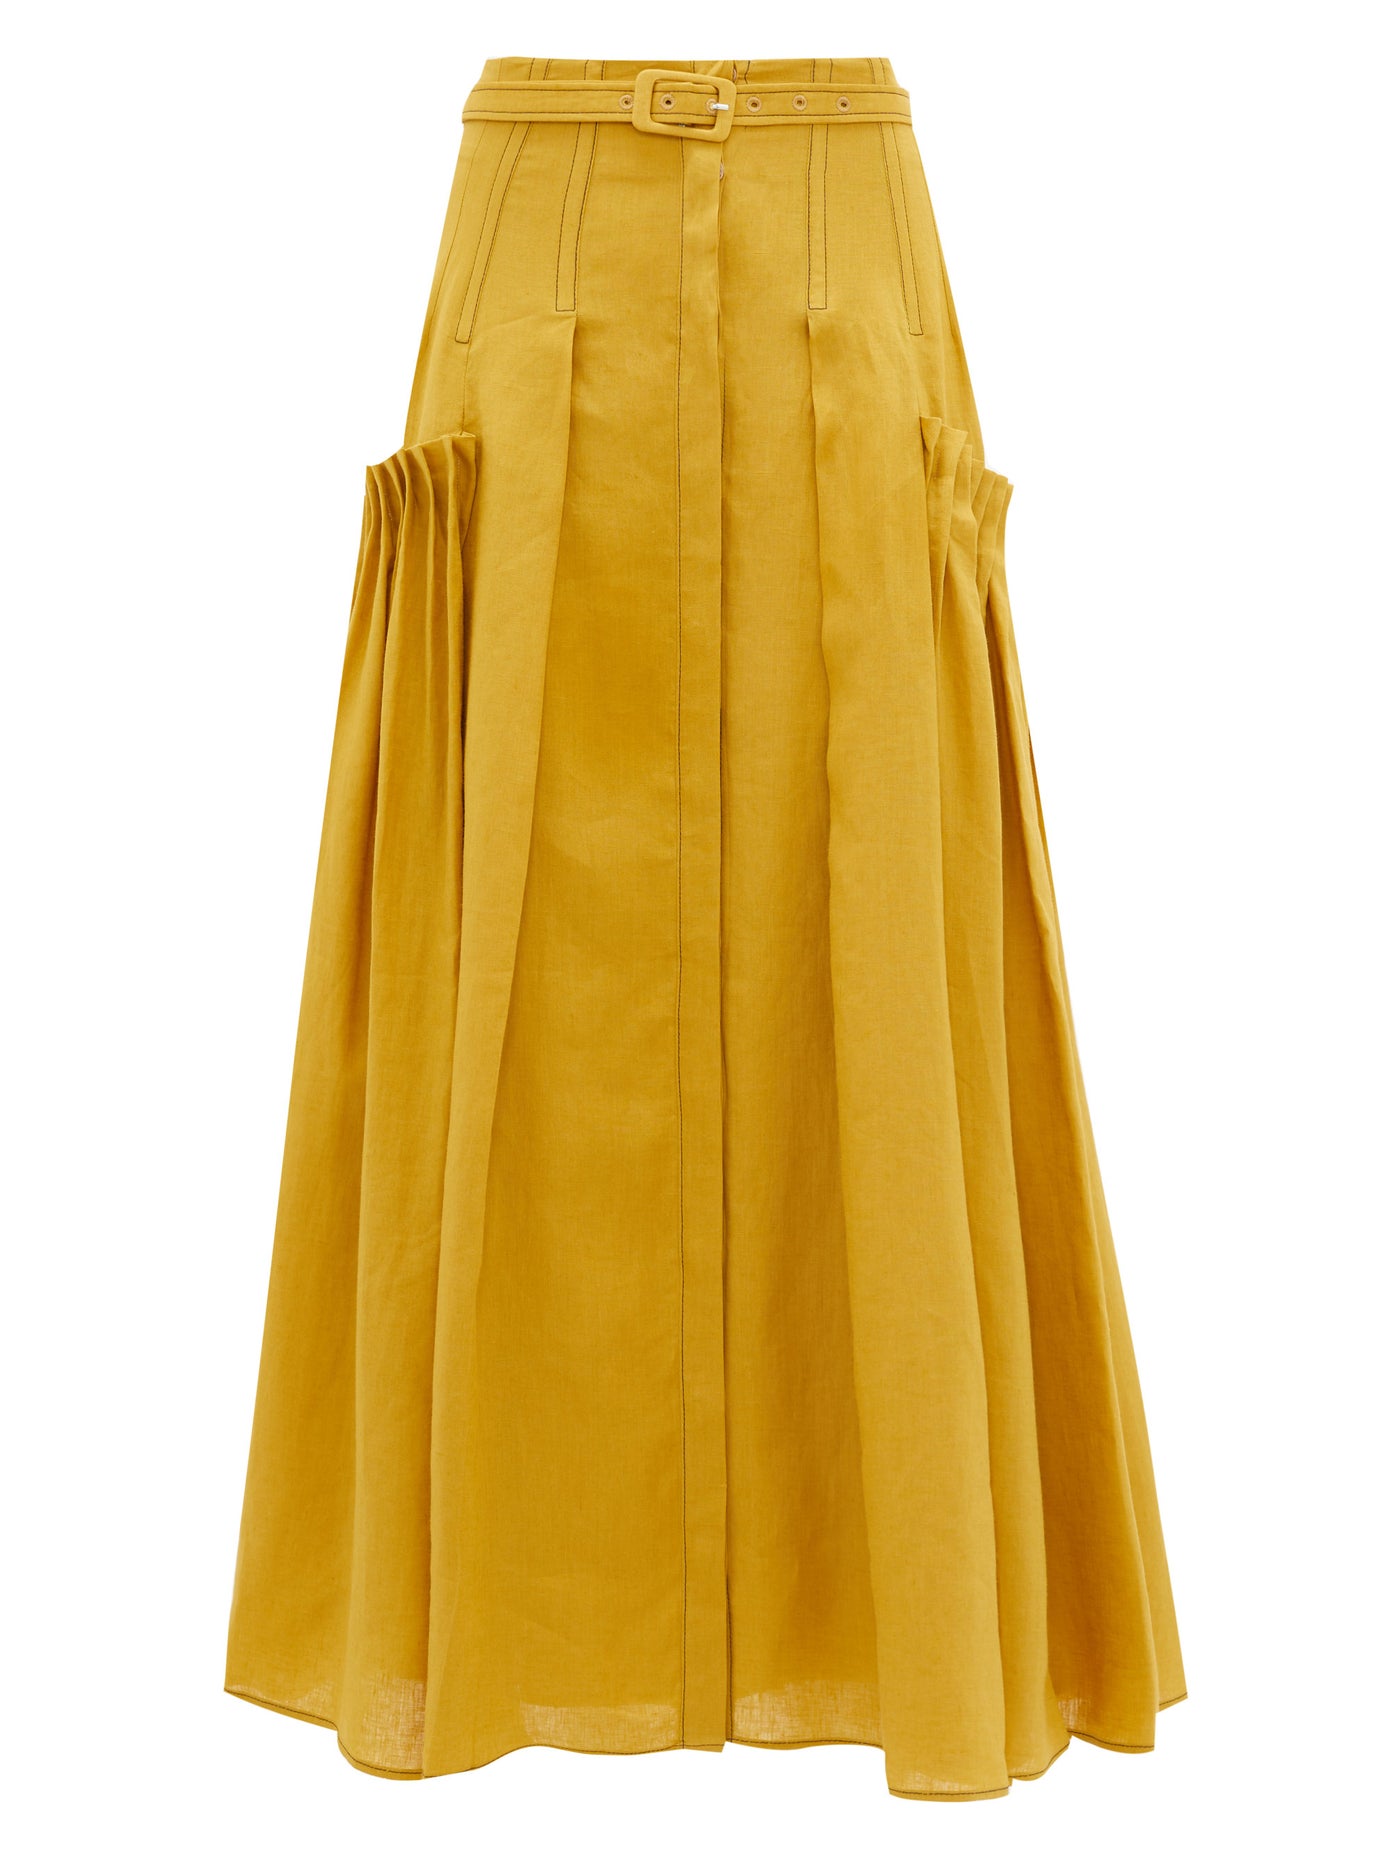 Желтая юбка: 12 модных образов с актуальной моделью на лето